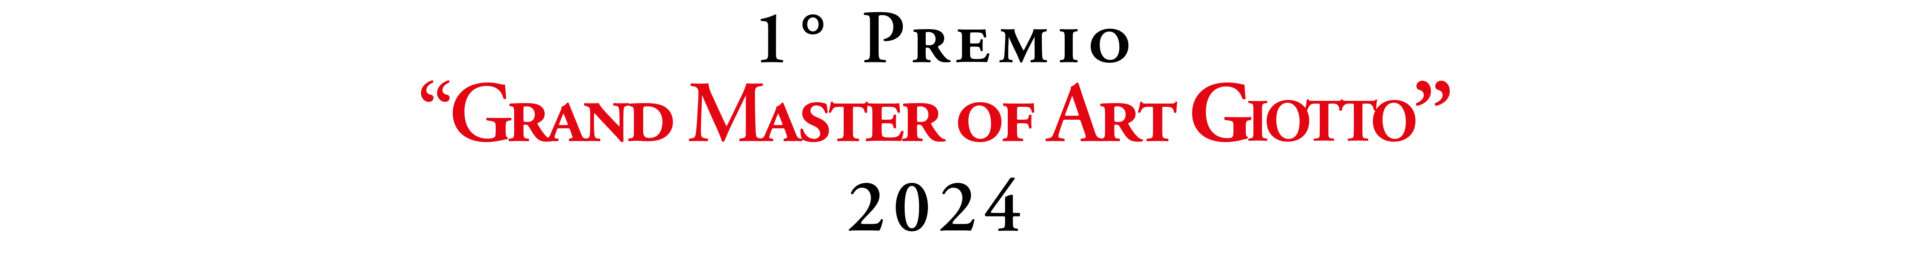 Grand Master of Art Giotto – Biennale d’Arte Città di Firenze 2024